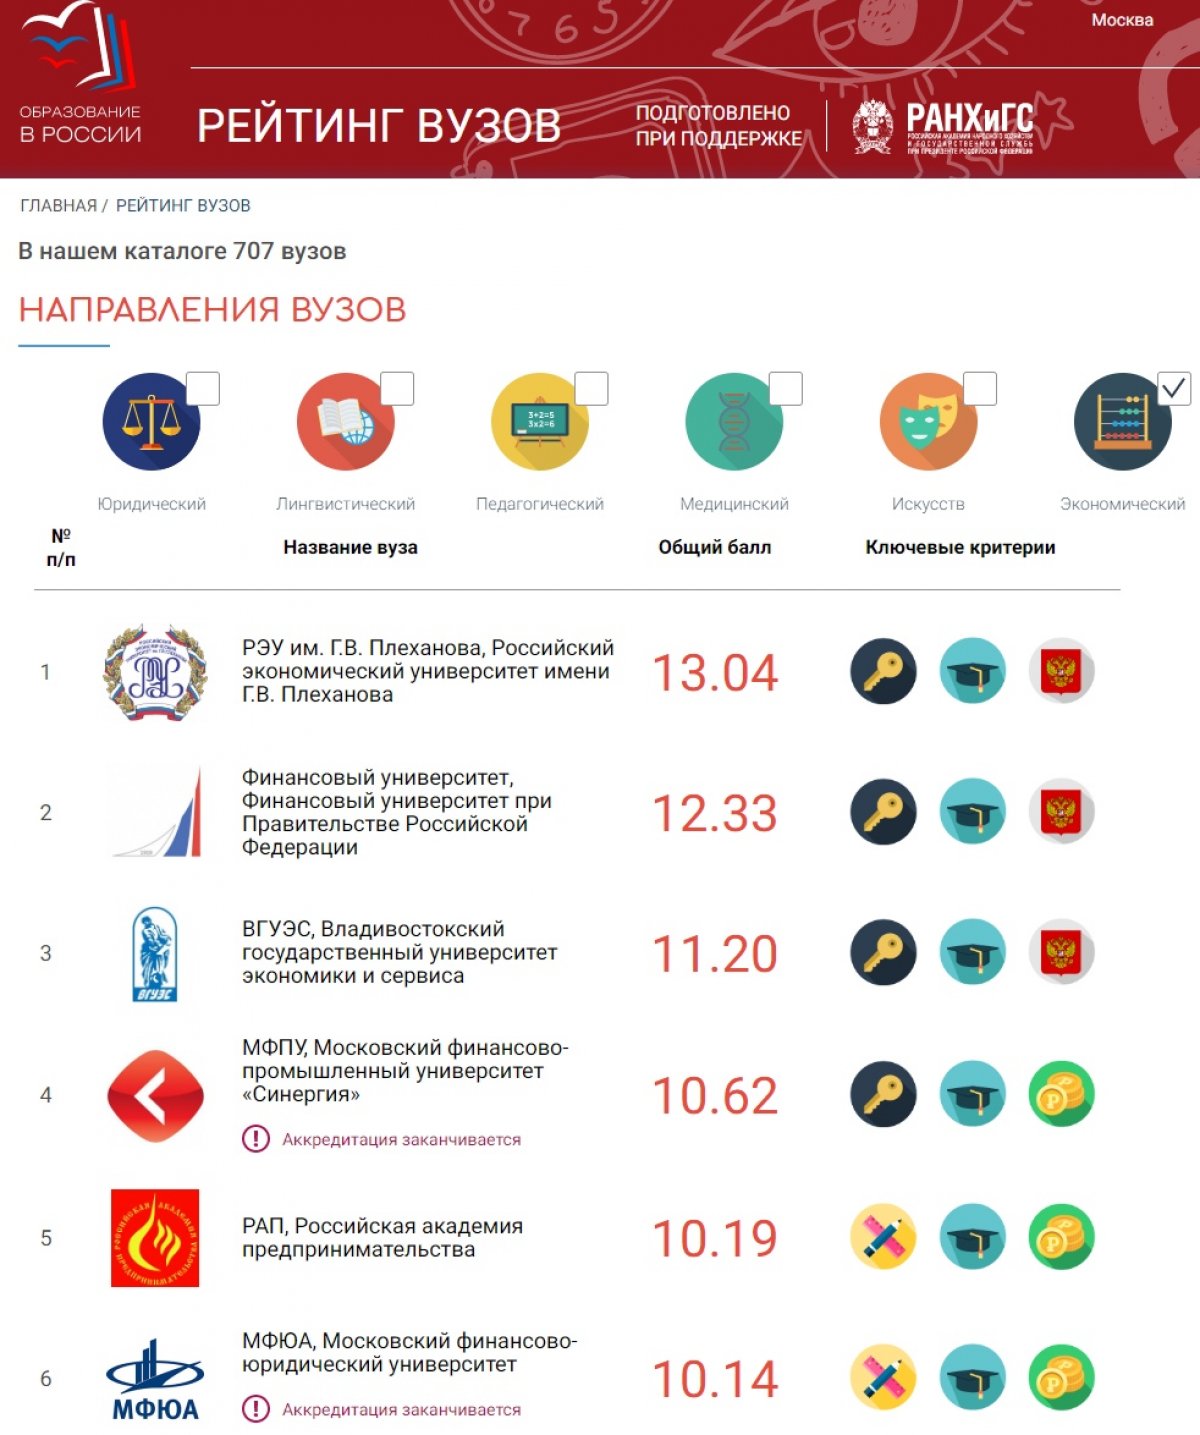 🥇Российский экономический университет им. Г.В. Плеханова занял в рейтинге первое место среди экономических вузов России🥇